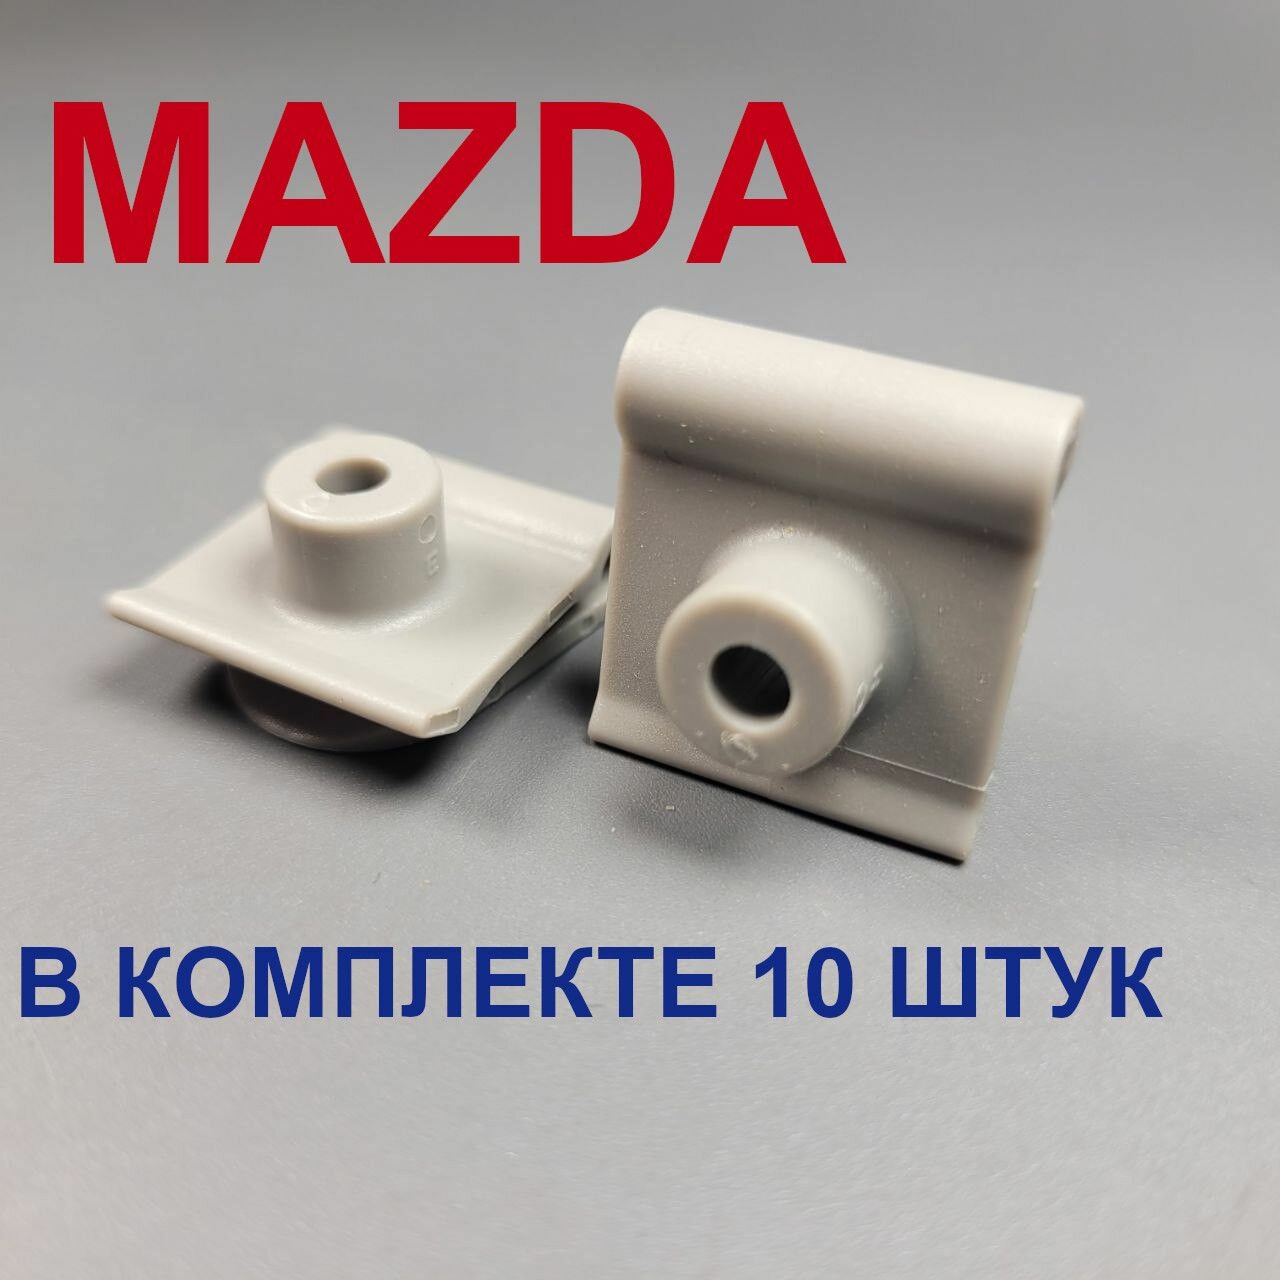 Клипсы (скобы зажимы) для автомобиля Мазда (Mazda) 10шт